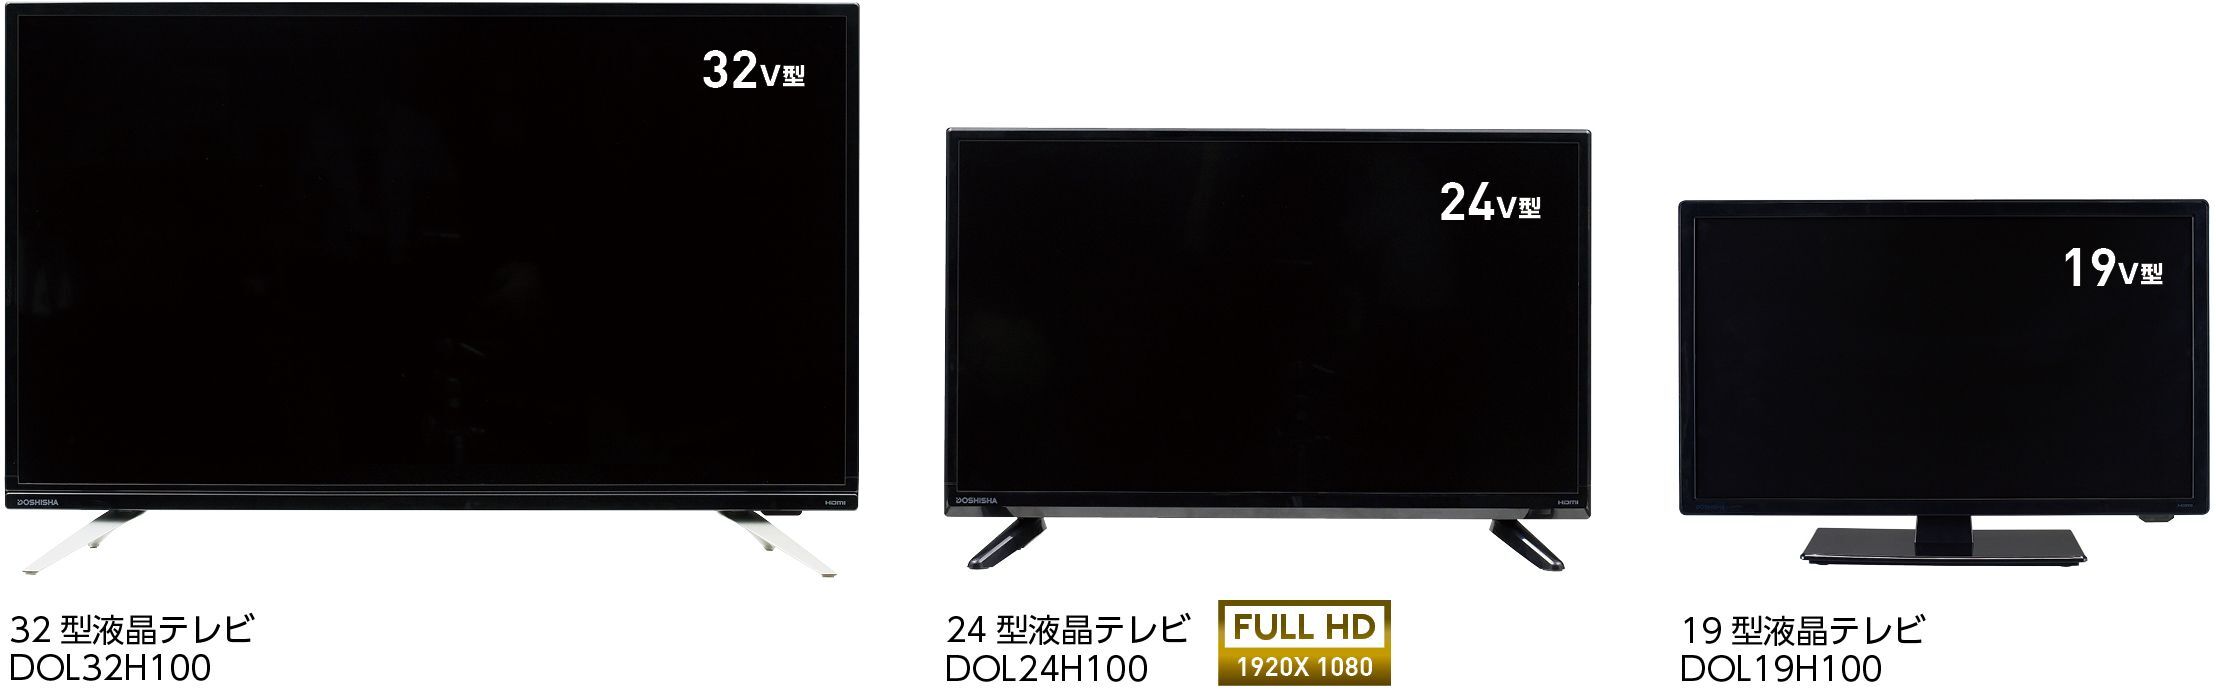 液晶テレビ DOSHISHA ブラック DOL19H100 19V型 新品